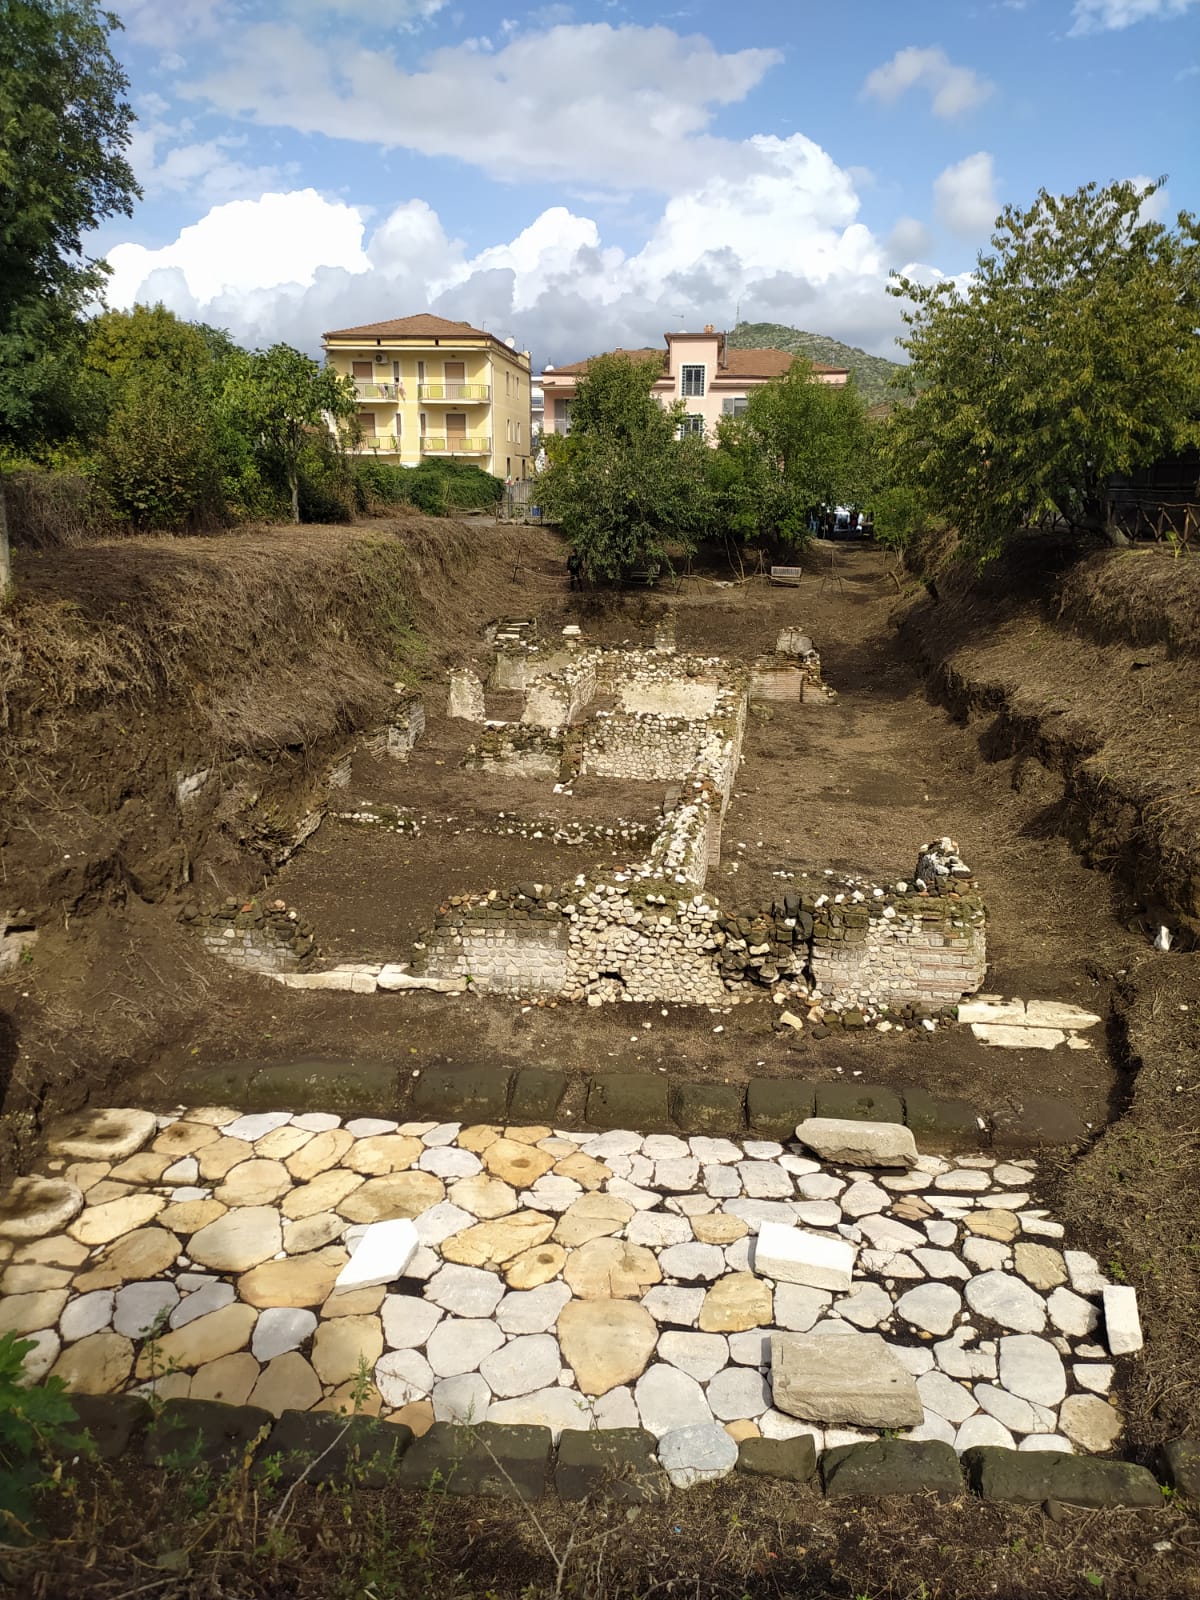 Sito archeologico Domus del decumano - Nocera Superiore - Salerno